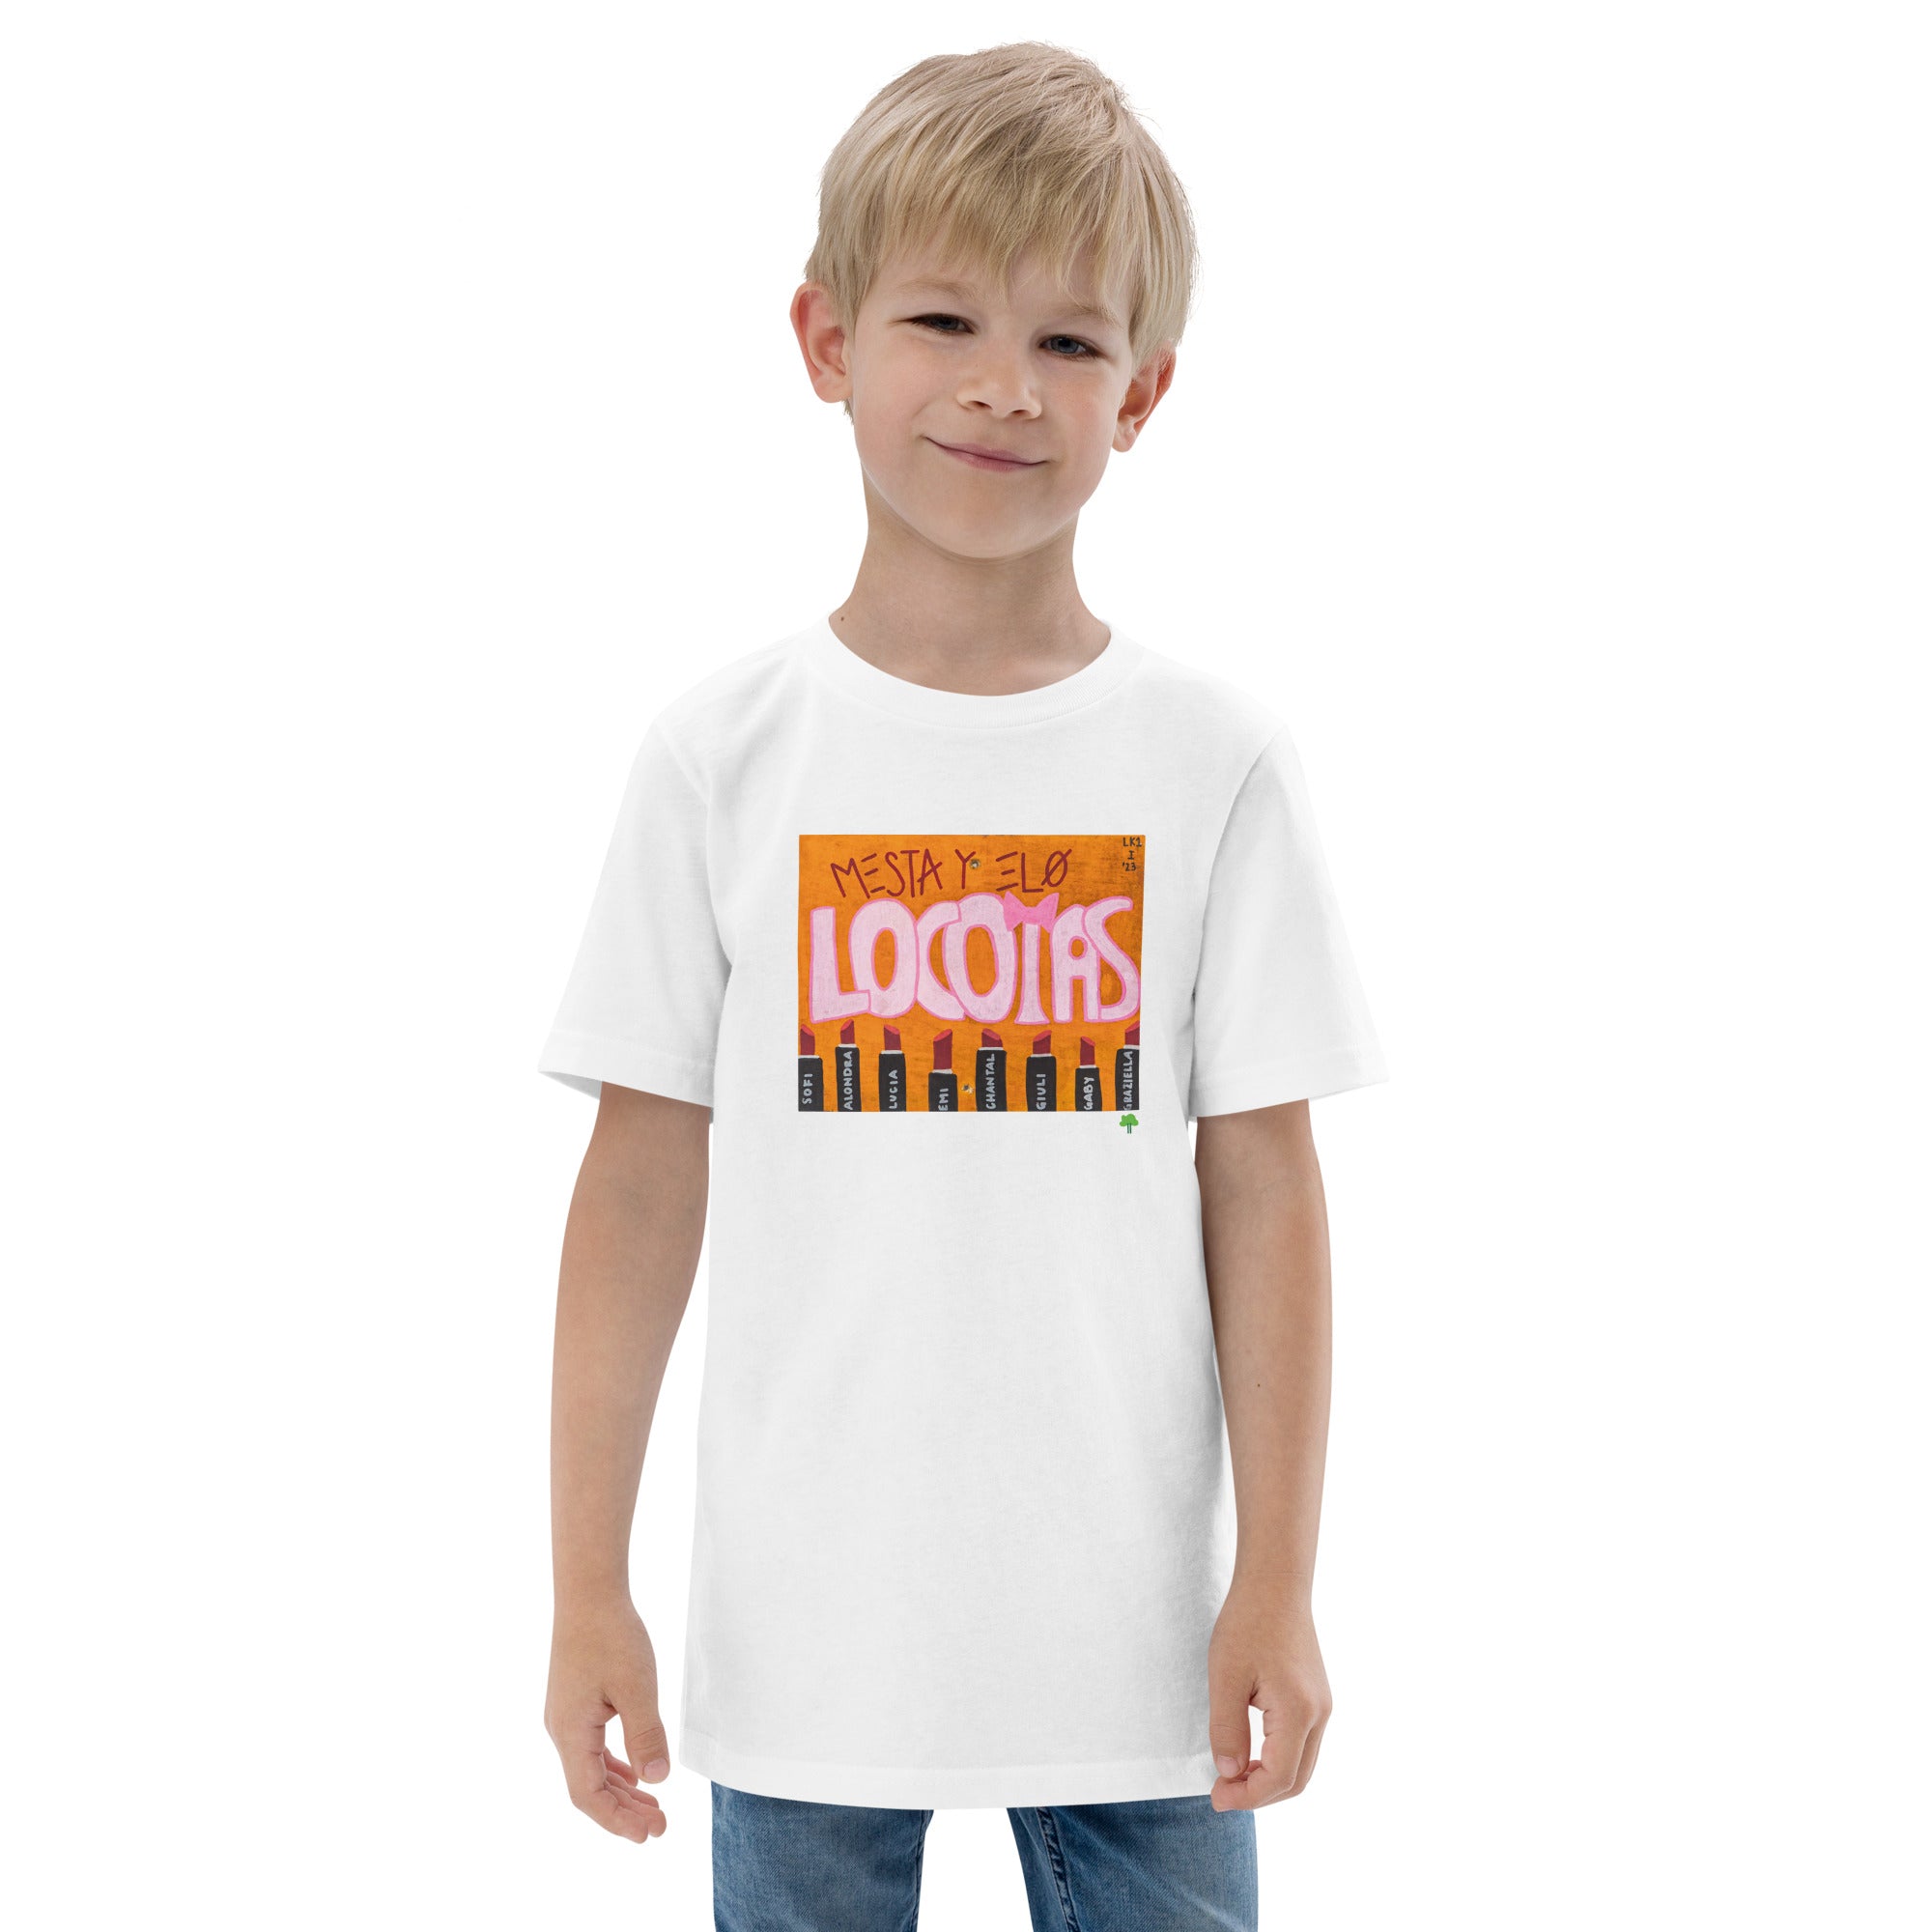 I Temp - Lago - K1 | Youth jersey t-shirt